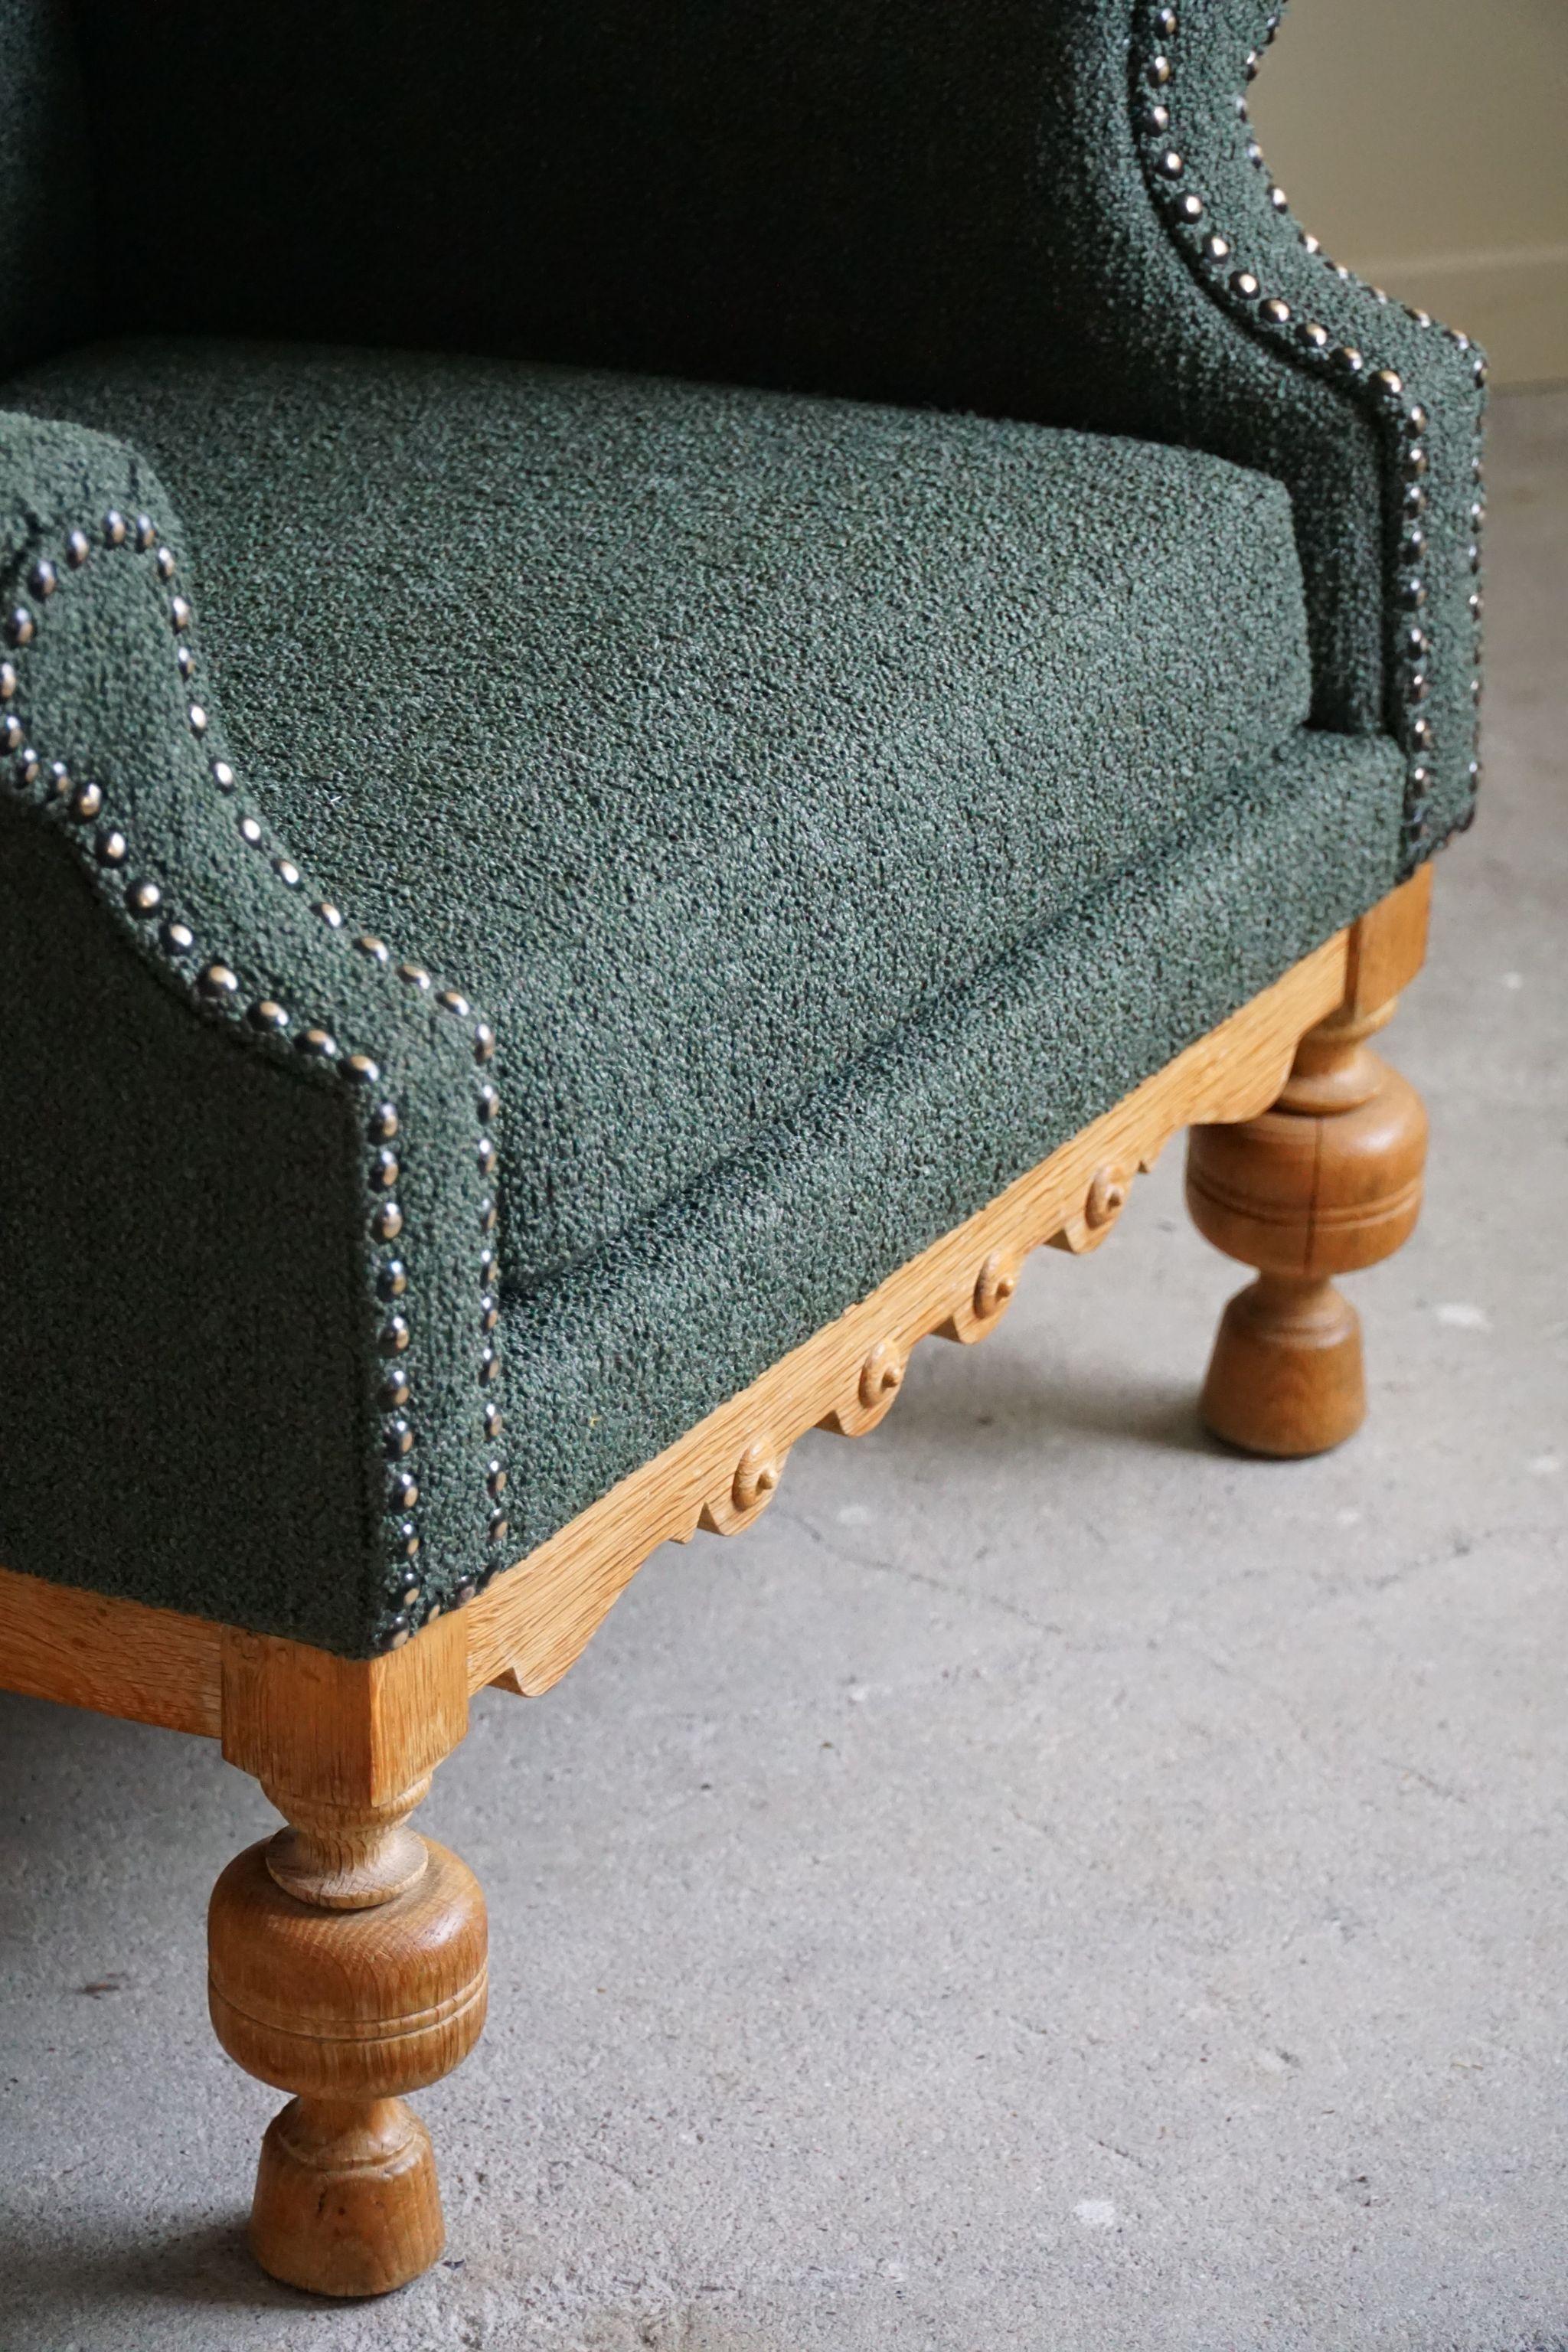 Lounge Chair in Oak & Green Bouclé, Danish Mid-Century Modern, 1950s For Sale 3